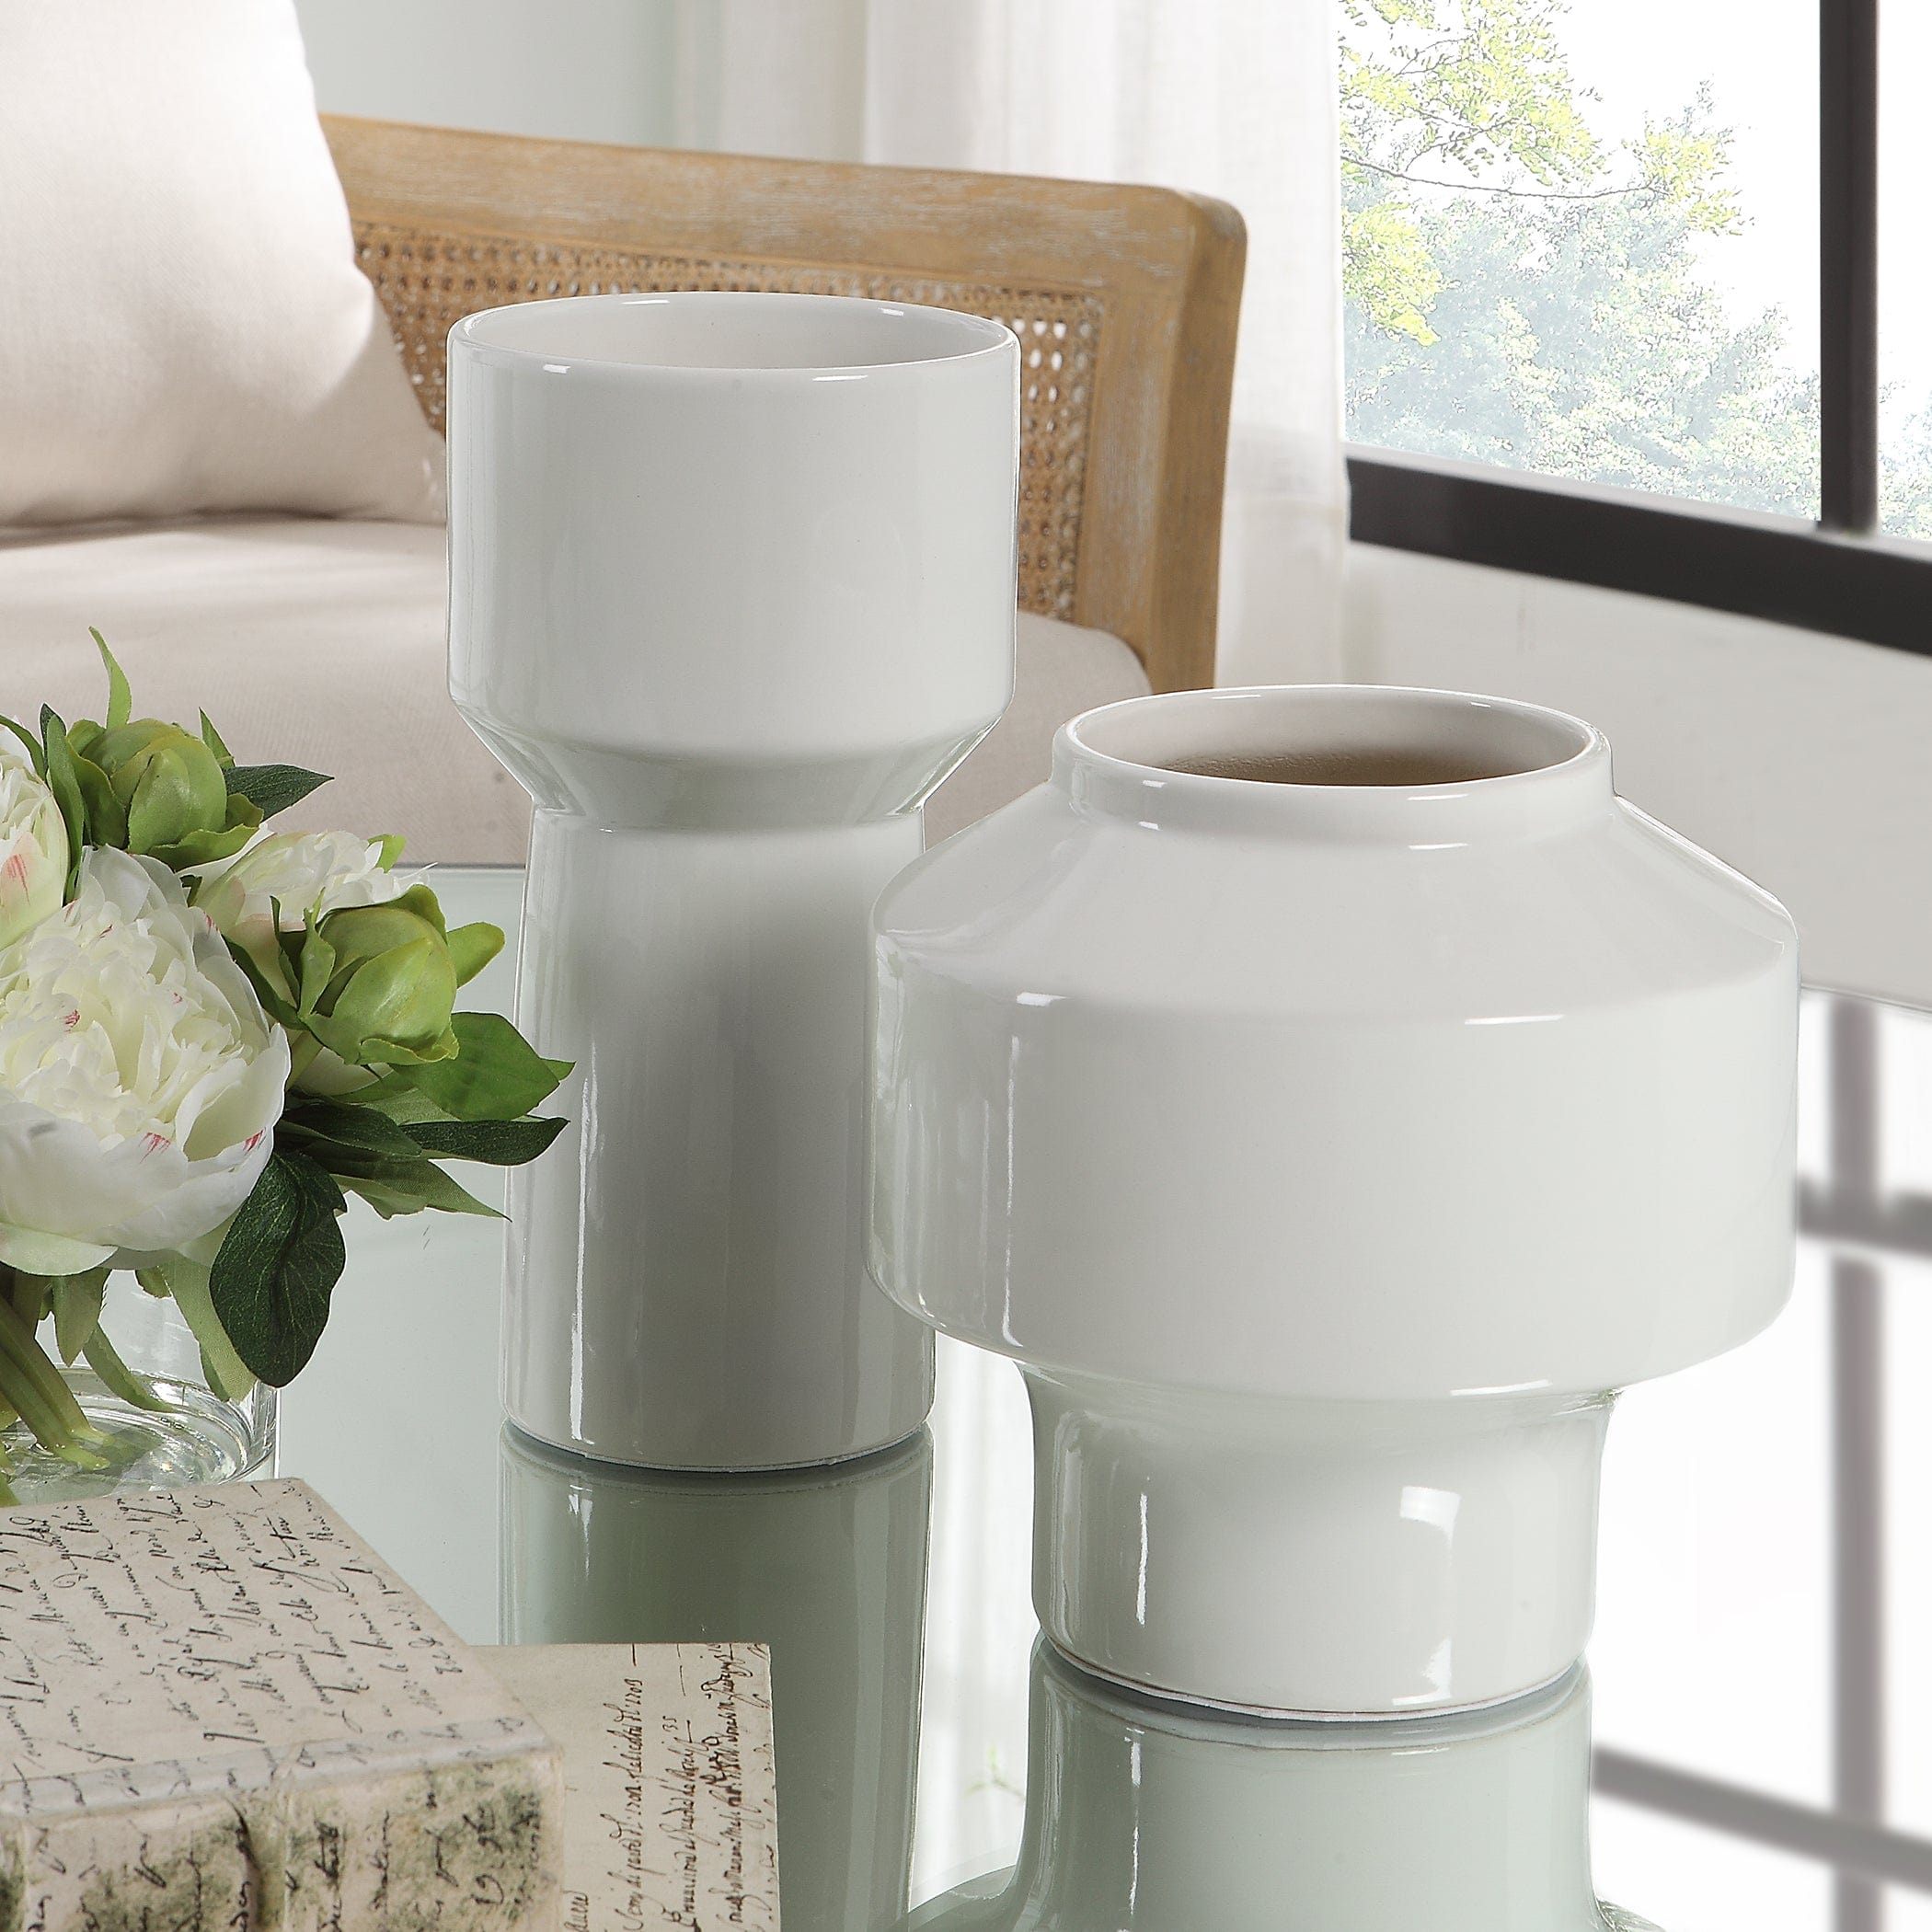 Illumina Abstract White Vases, Set/2 Uttermost